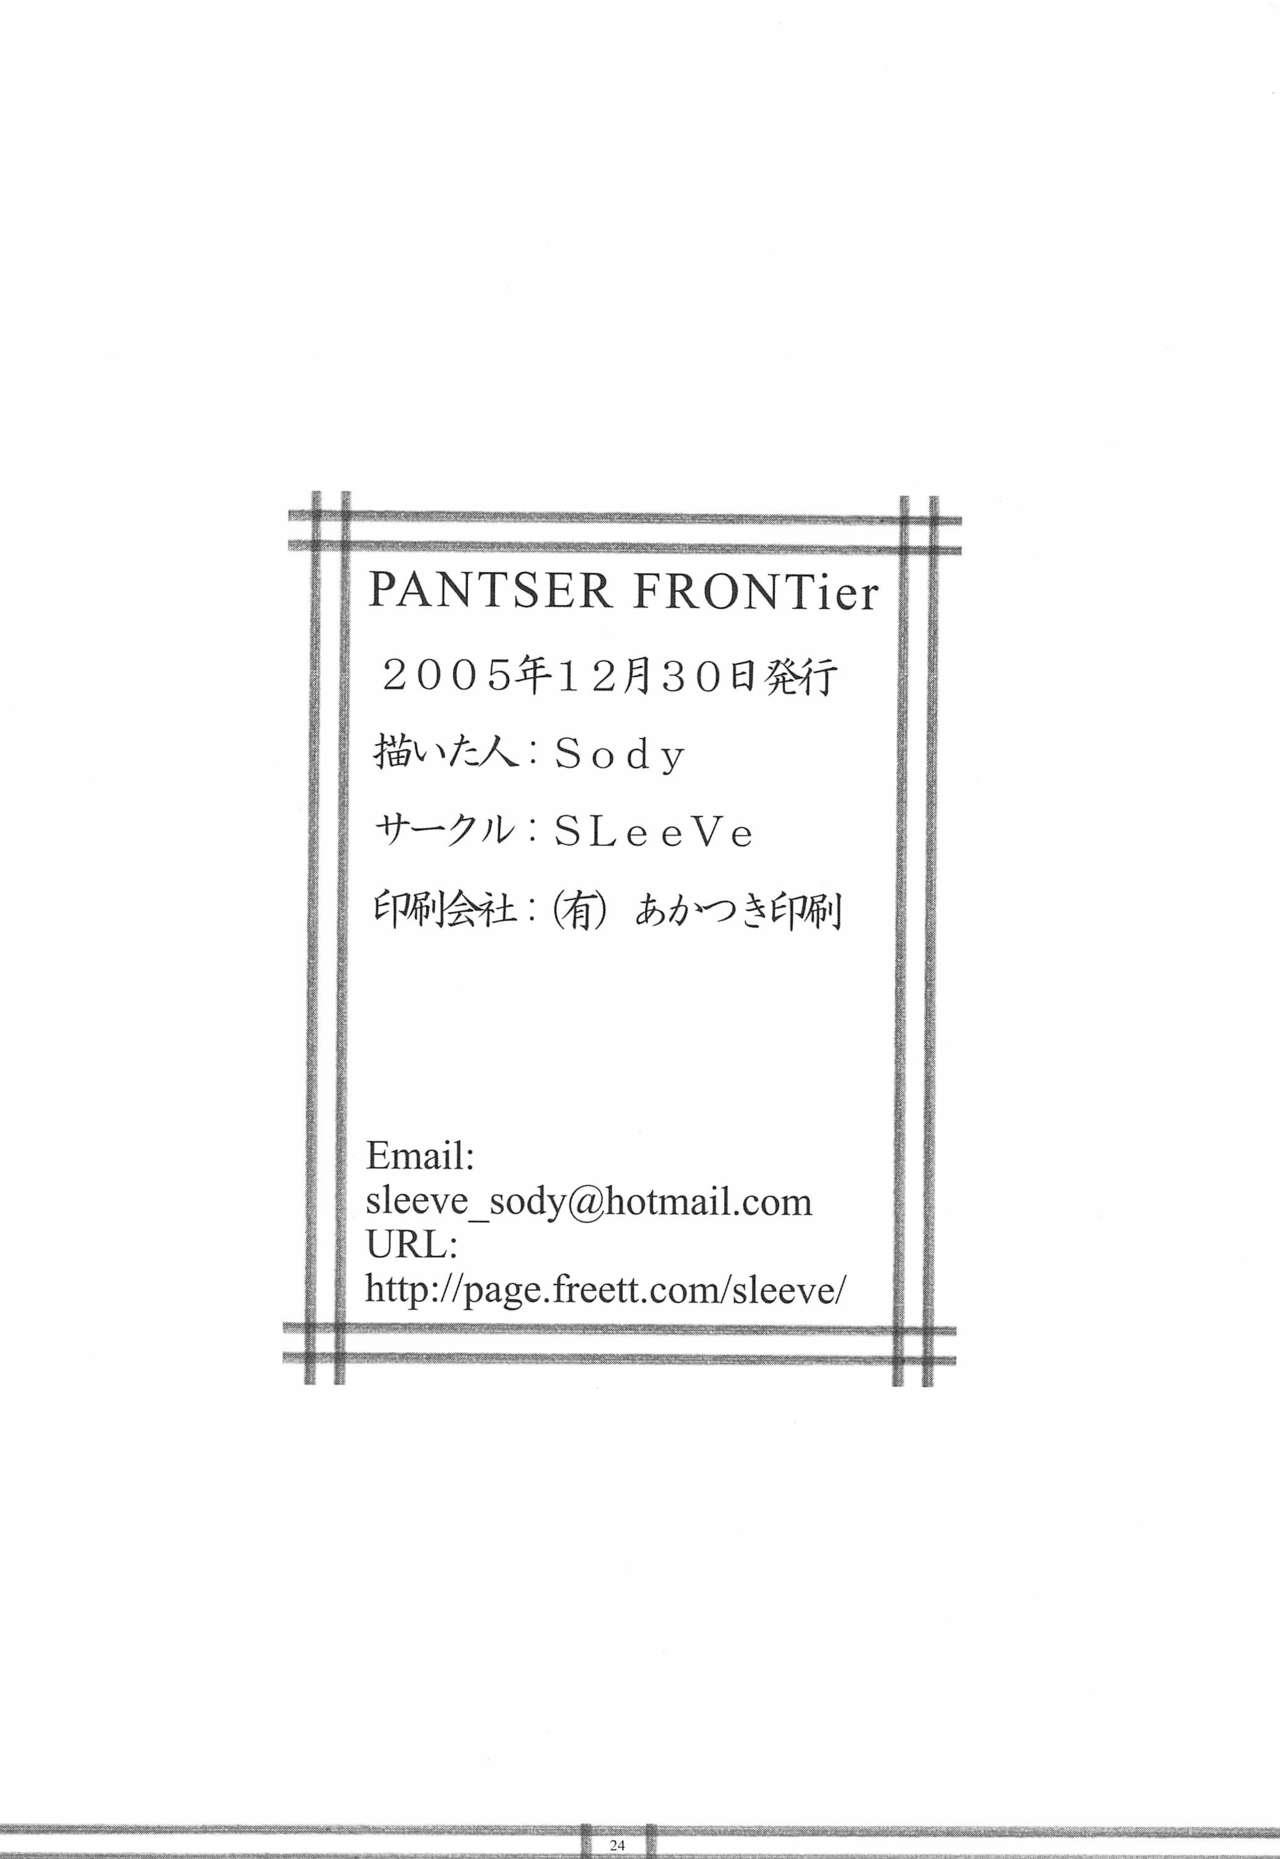 PANTSER FRONTier 25